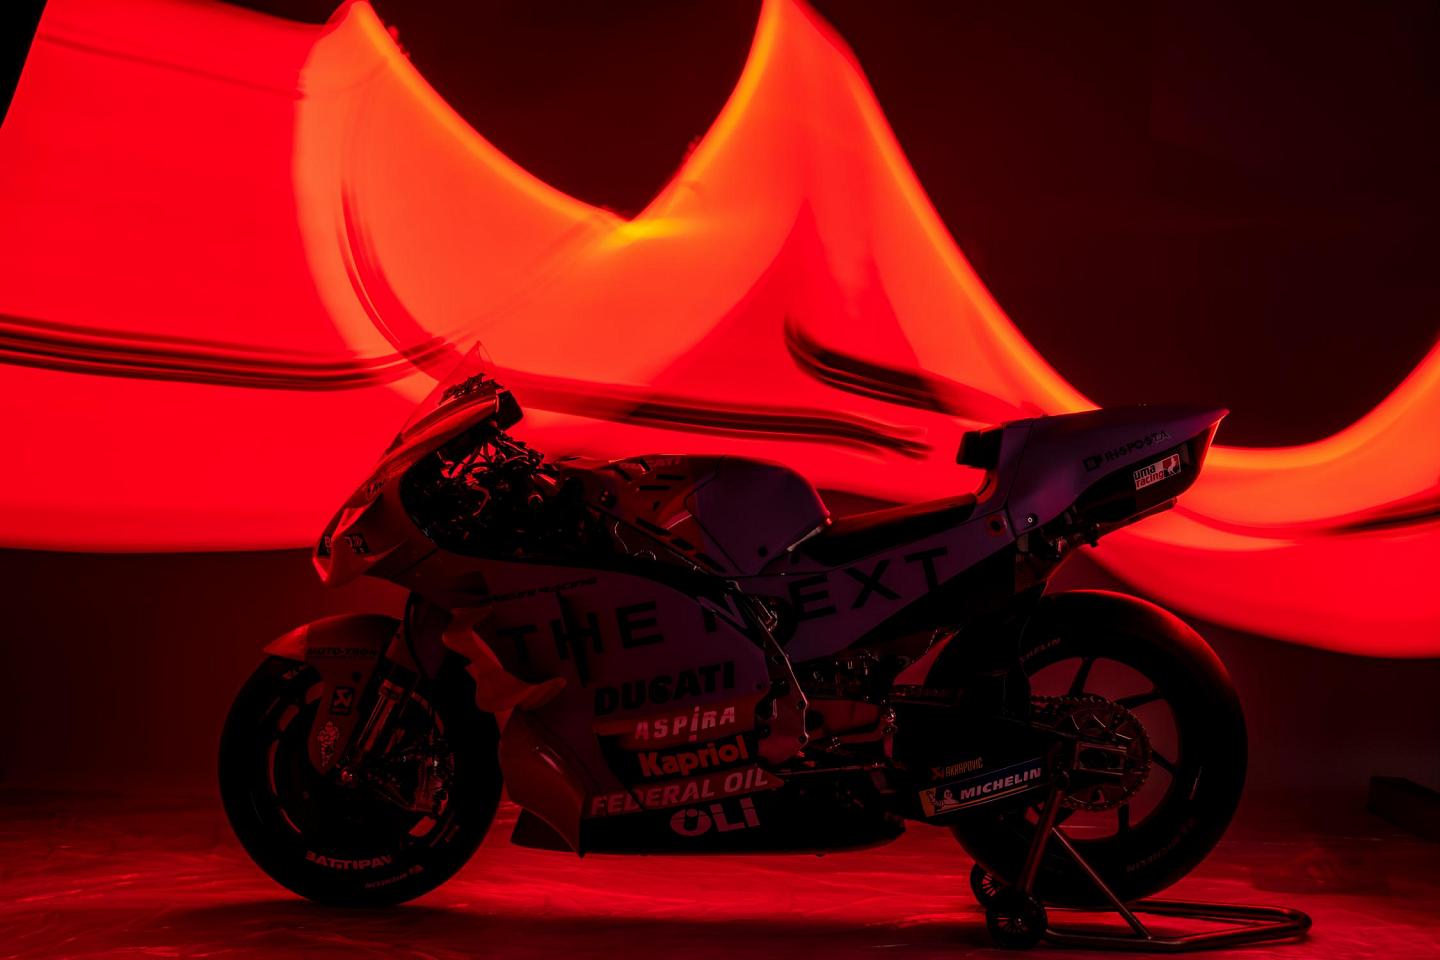 MotoGP : Gresini Racing dévoile ses nouvelles couleurs (...)